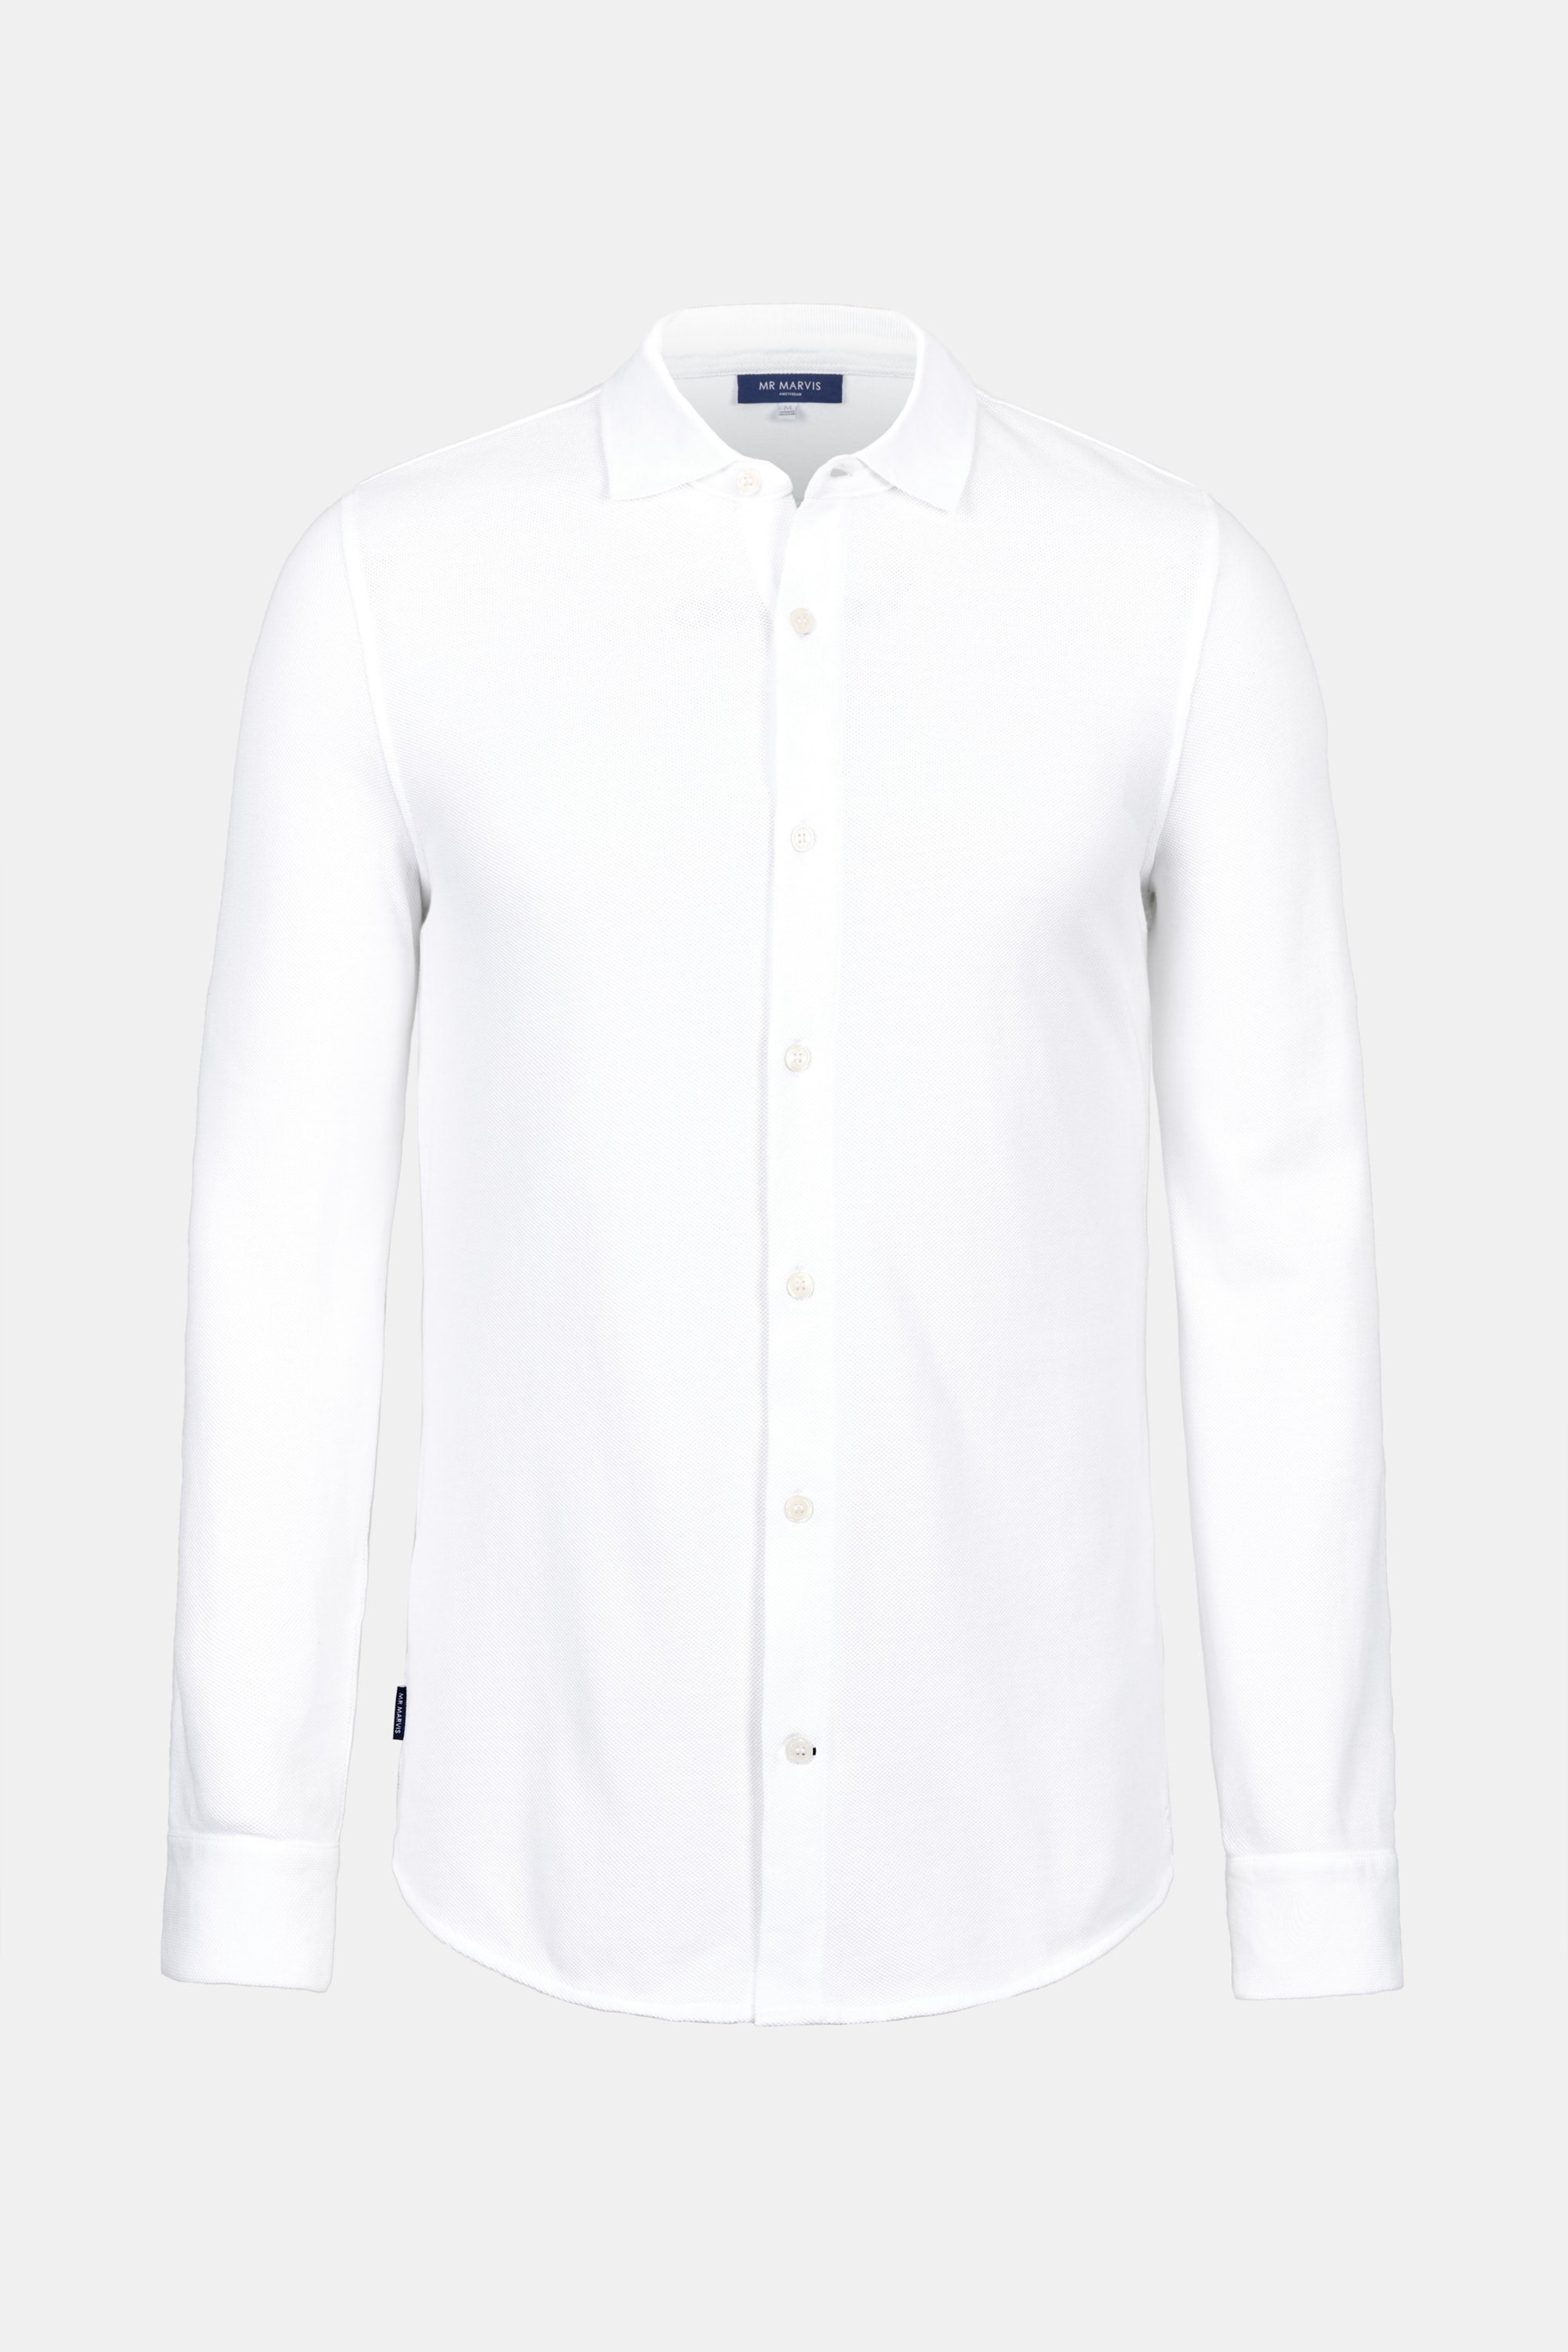 Wimbledons - The Piqué Shirt